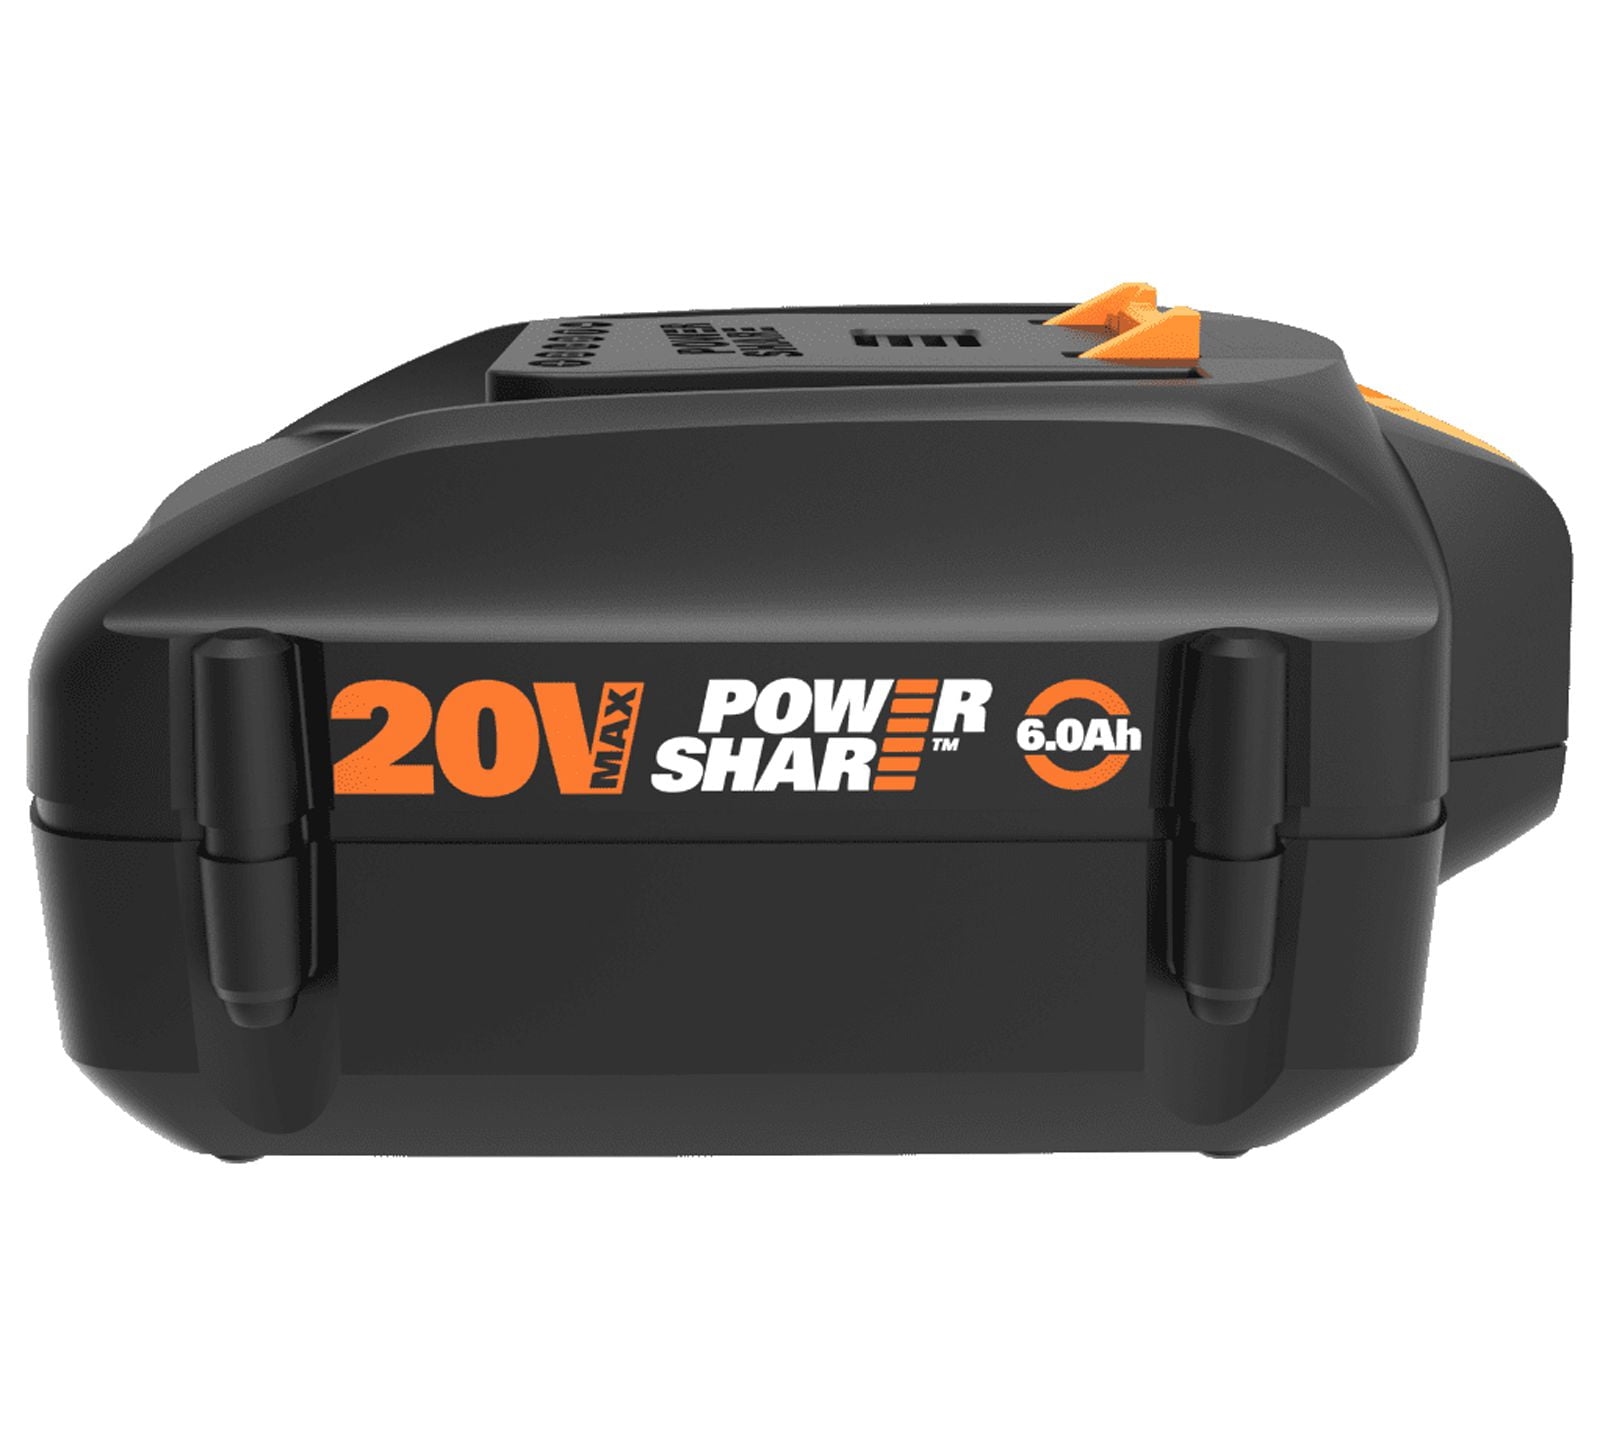 Worx Power Share Pro 20V Max 6Ah High Capacity Battery